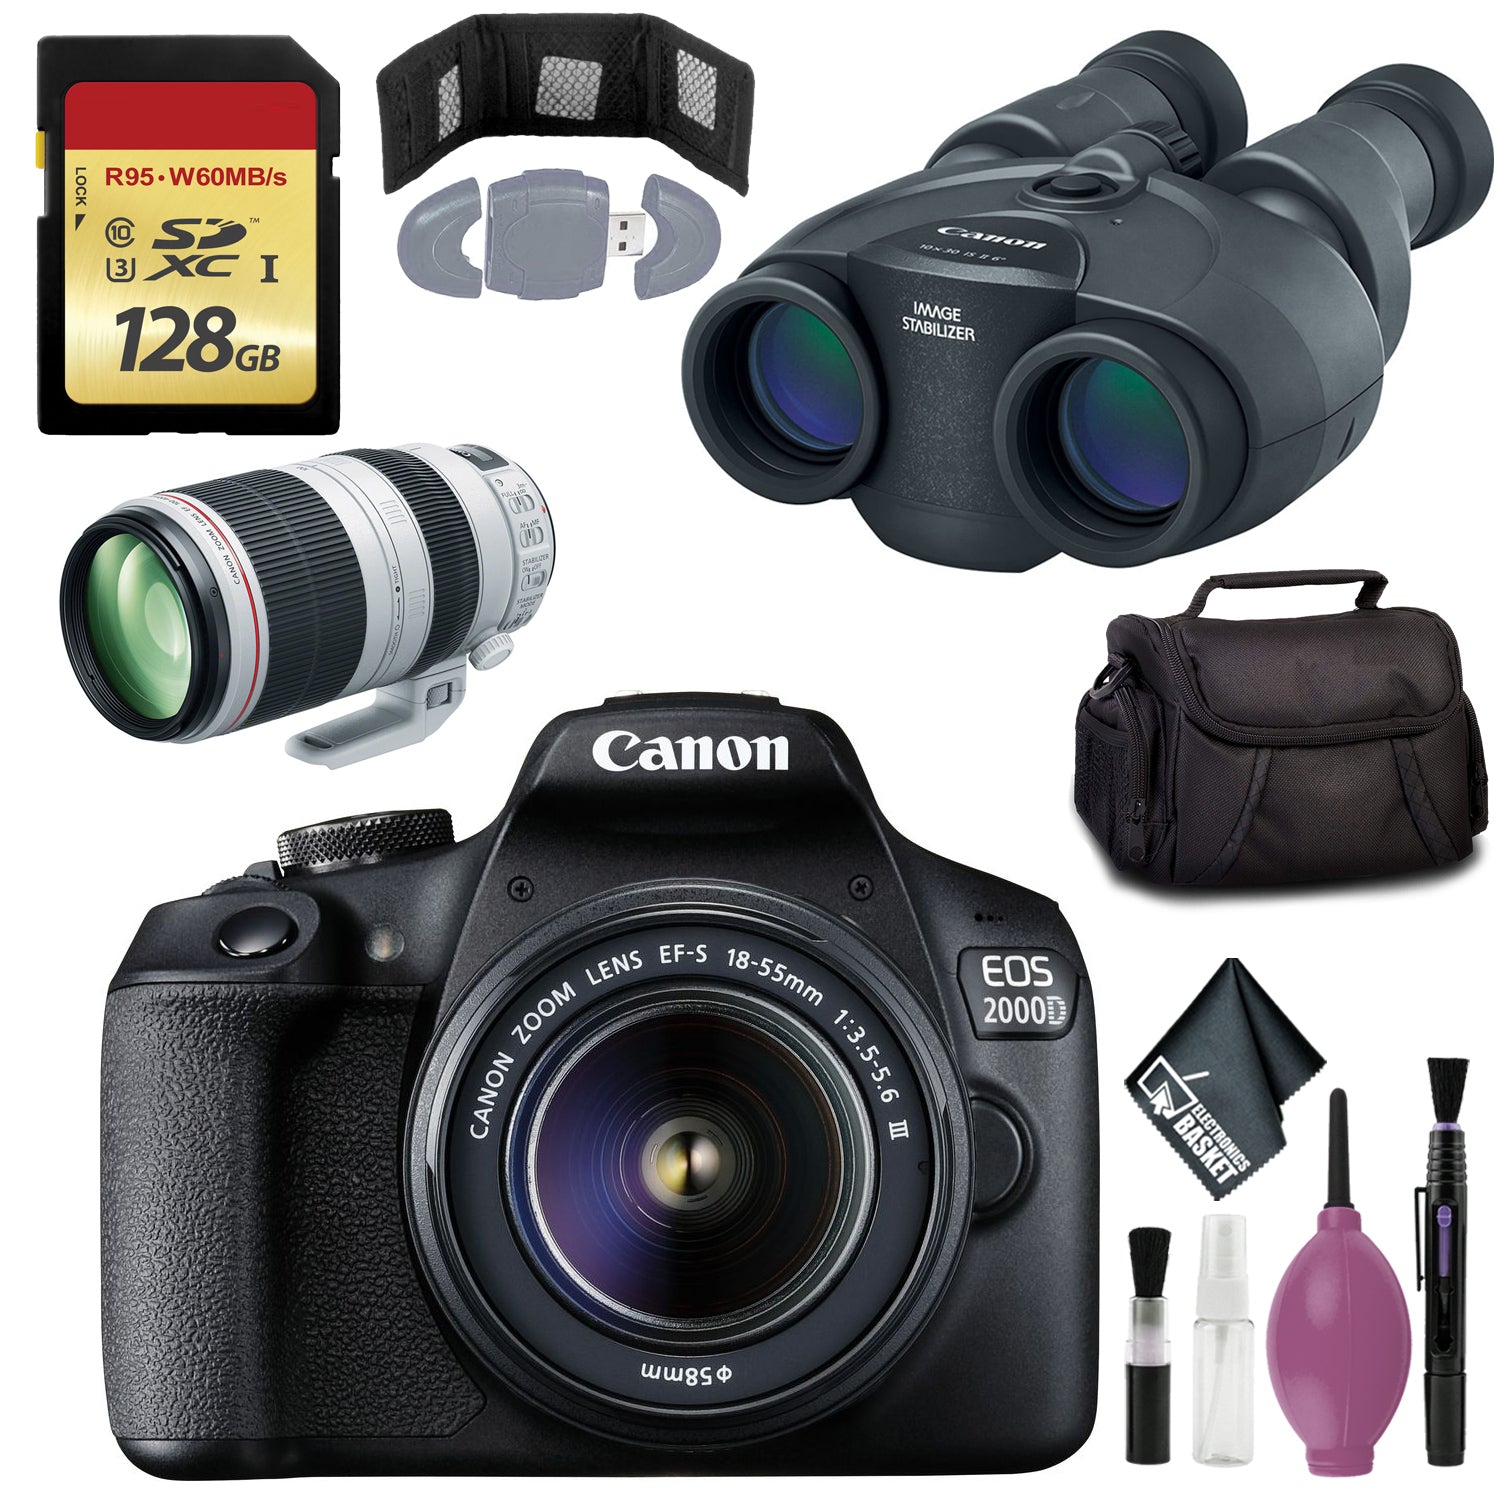 Canon 10x30 IS II Image Stabilized Binocular - EOS 2000D Black + EF-S 18-55mm f/3.5-5.6 III Lens